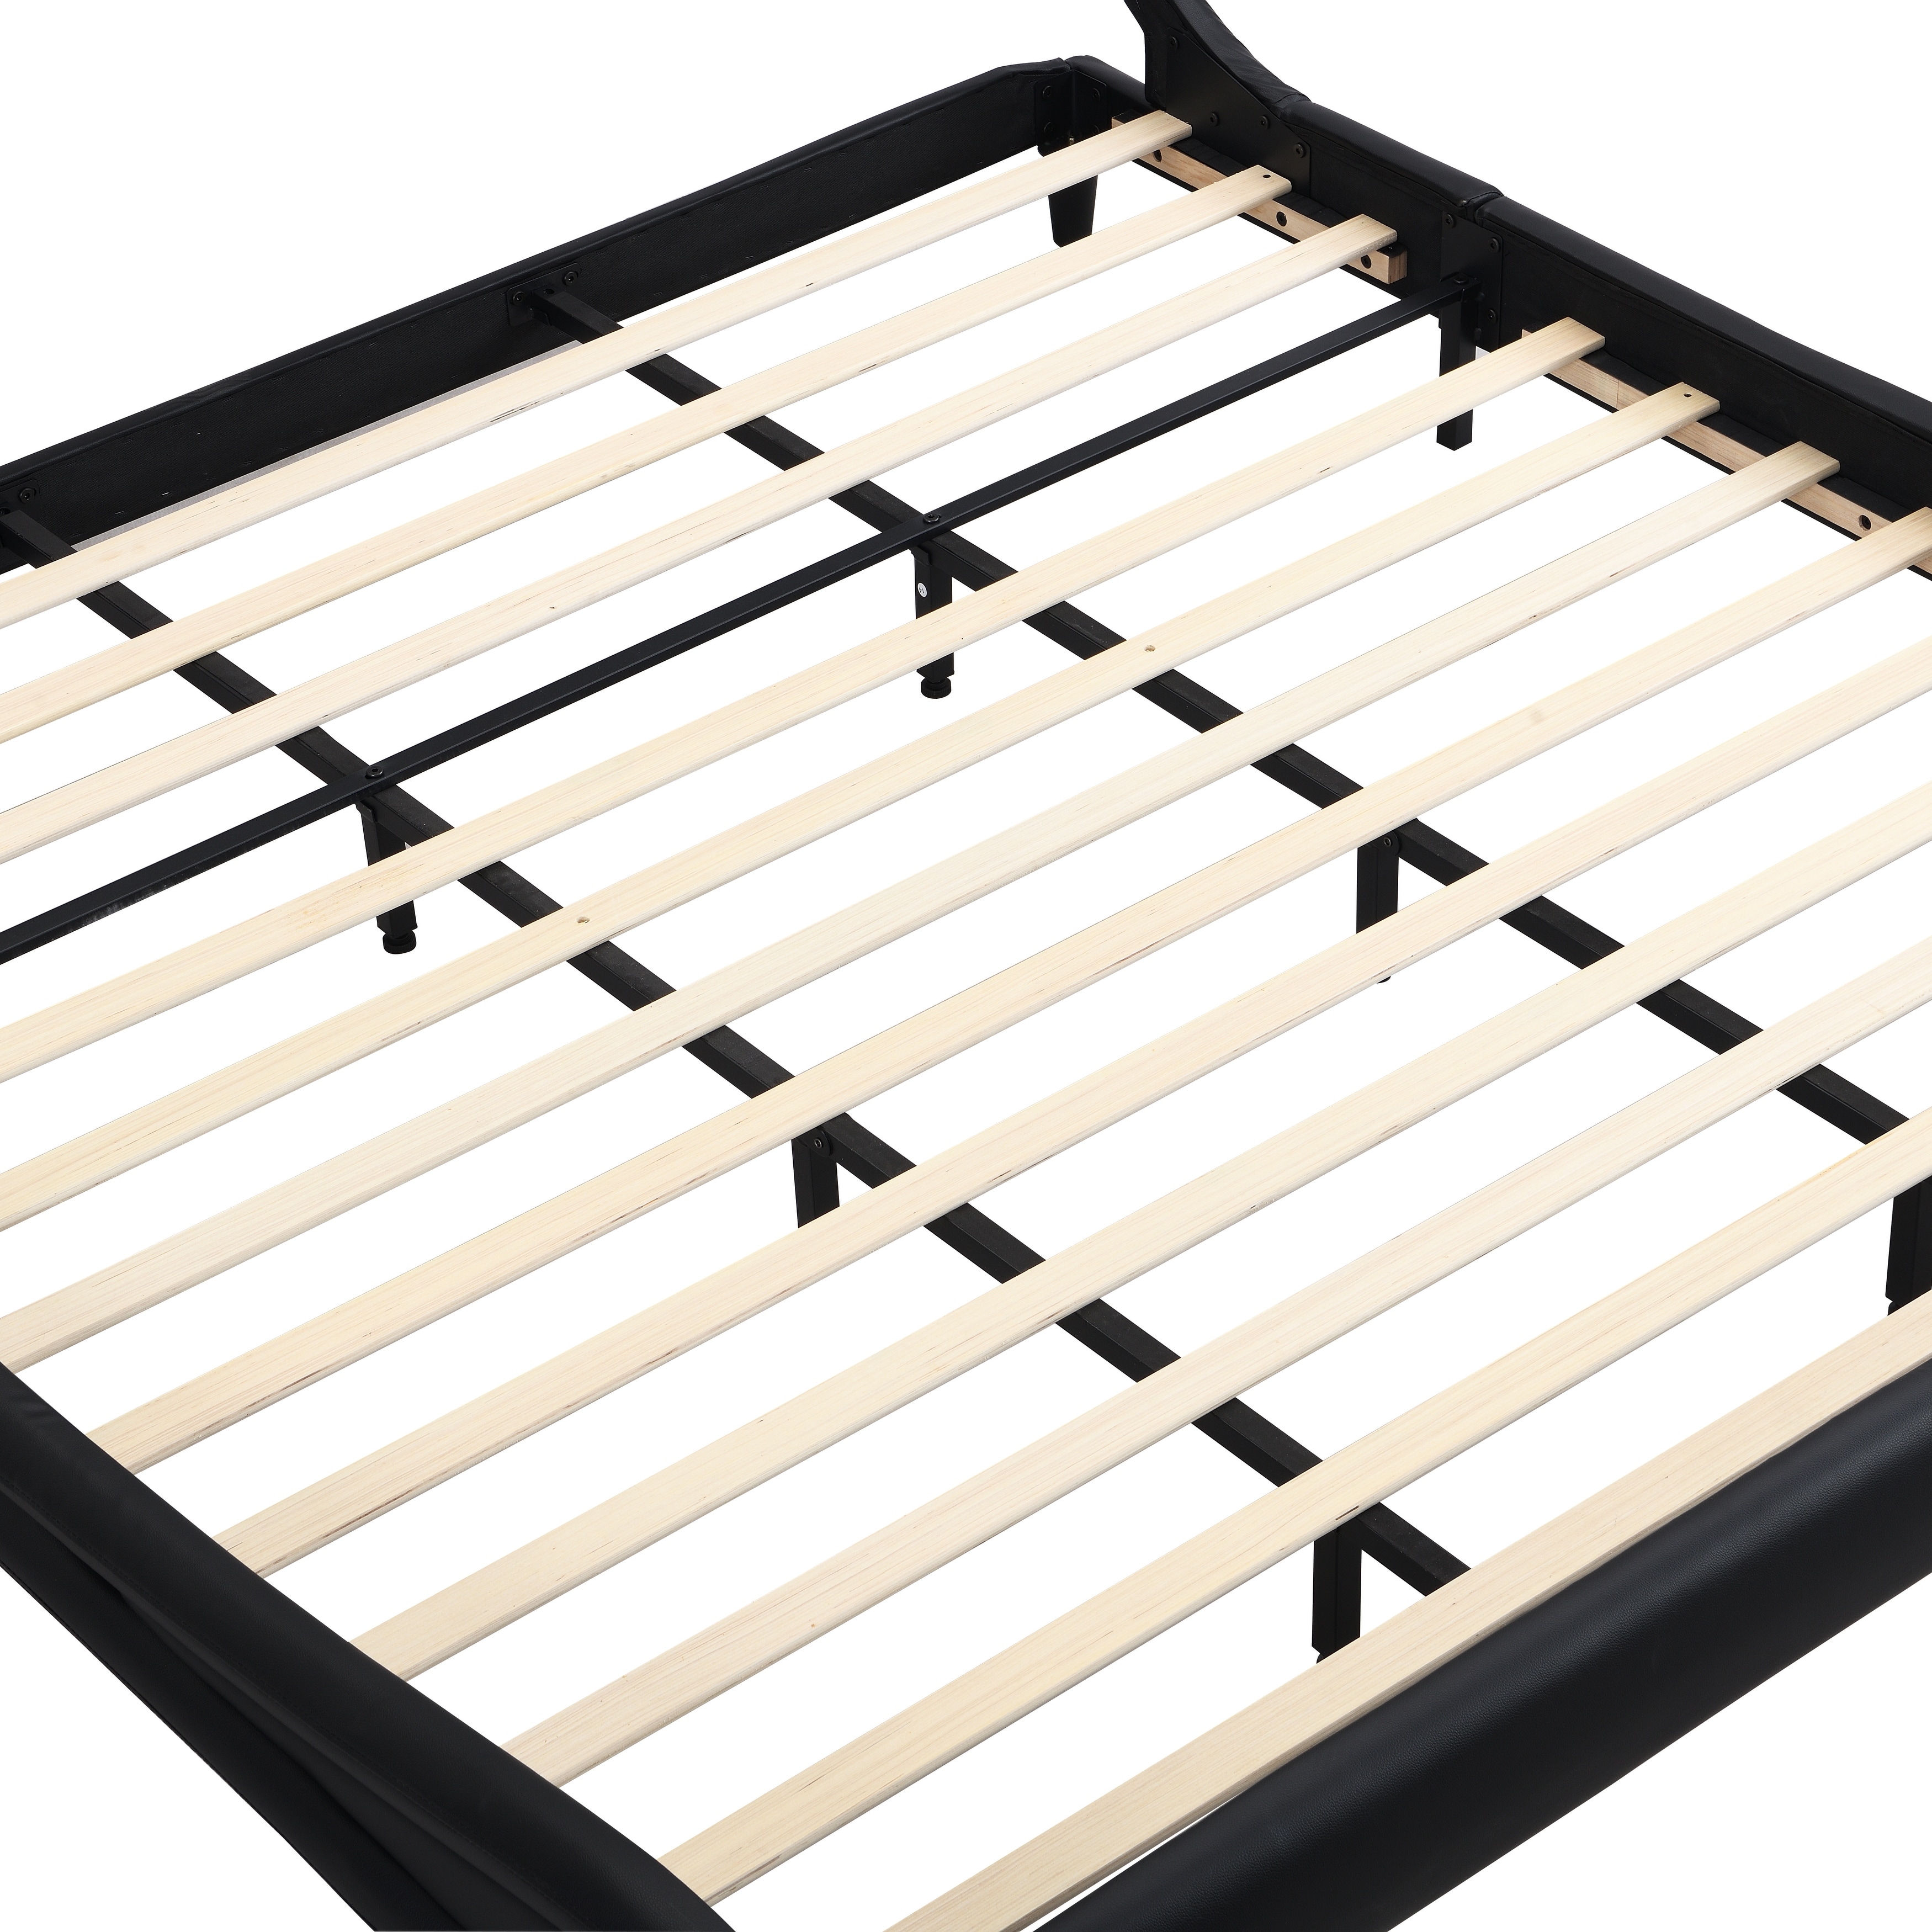 LED-Lit Wave-Like Faux Leather Upholstered Platform Bed Frame, Strong Wood Slats, Easy Assembly